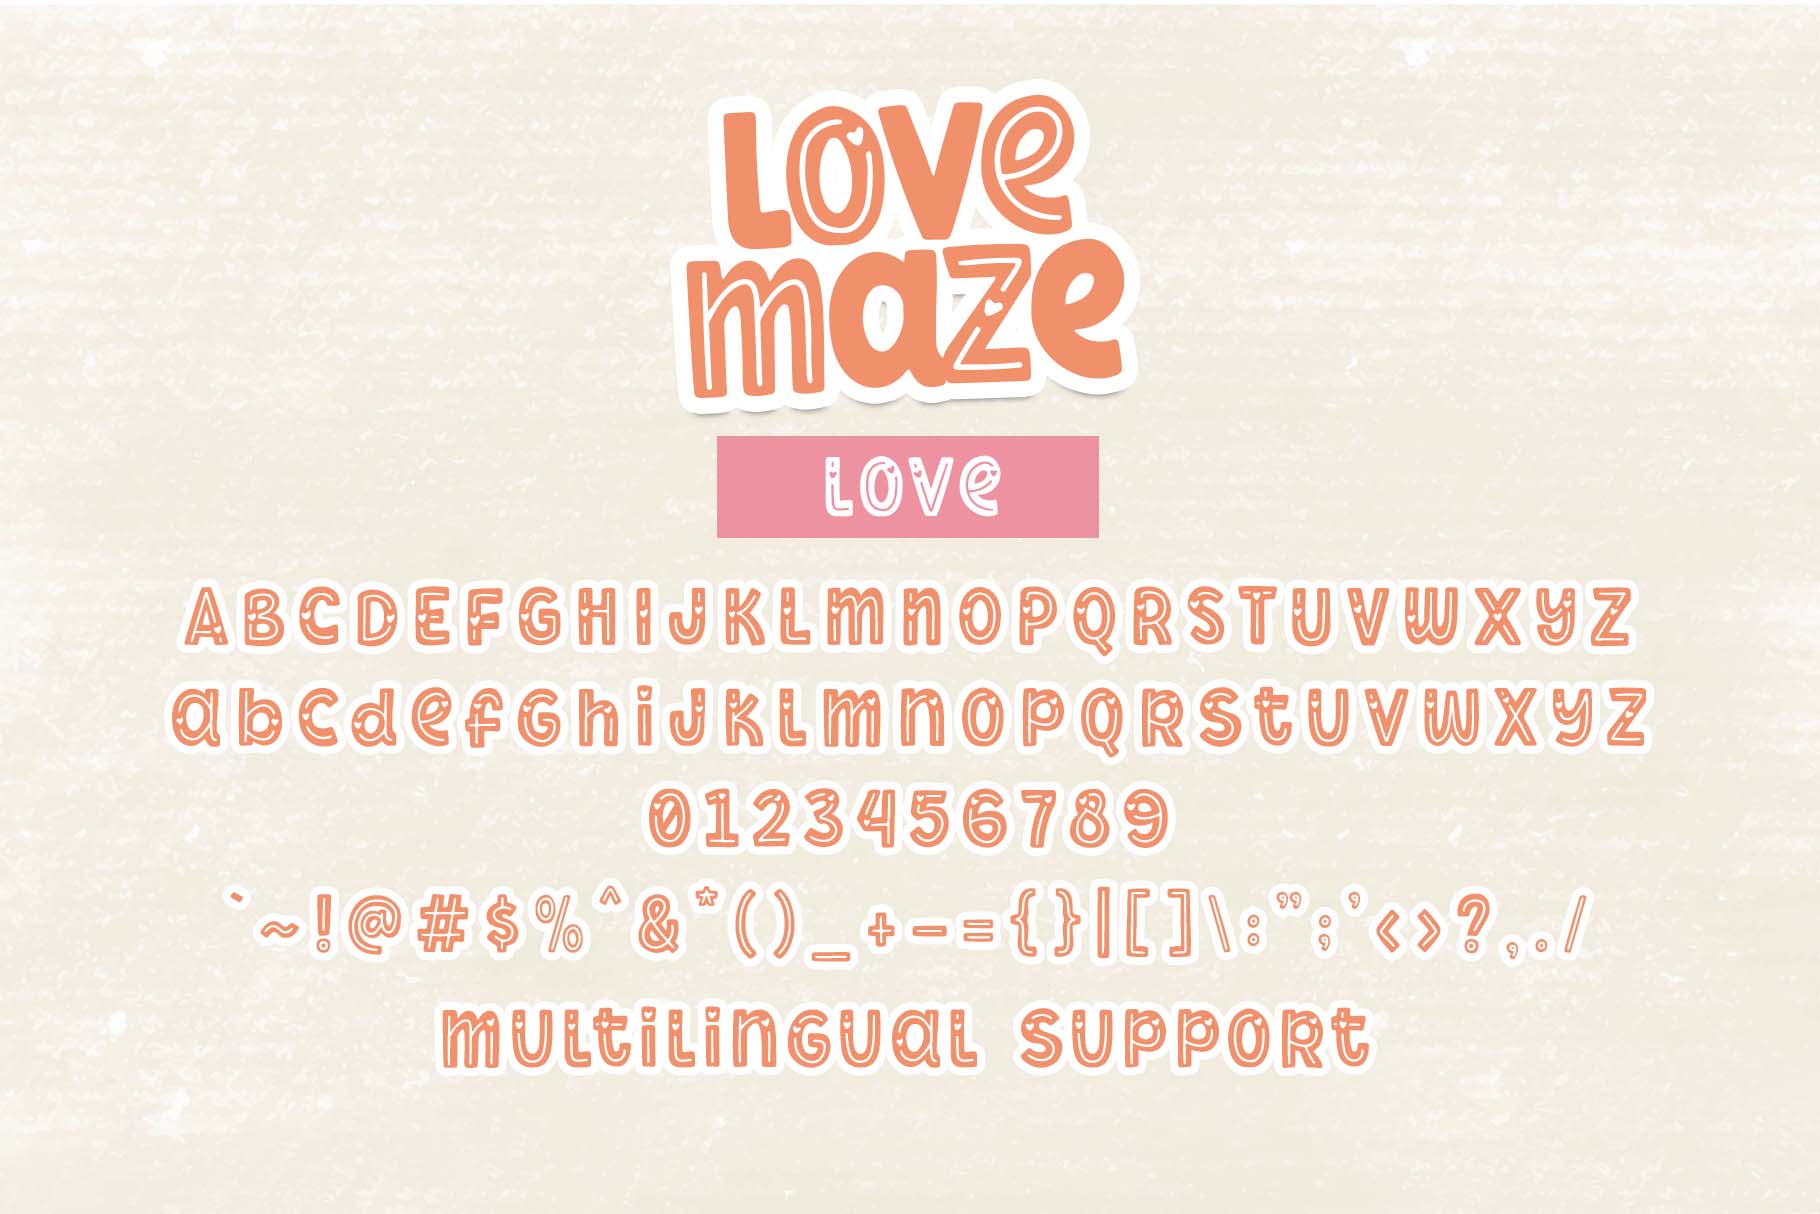 Love Maze